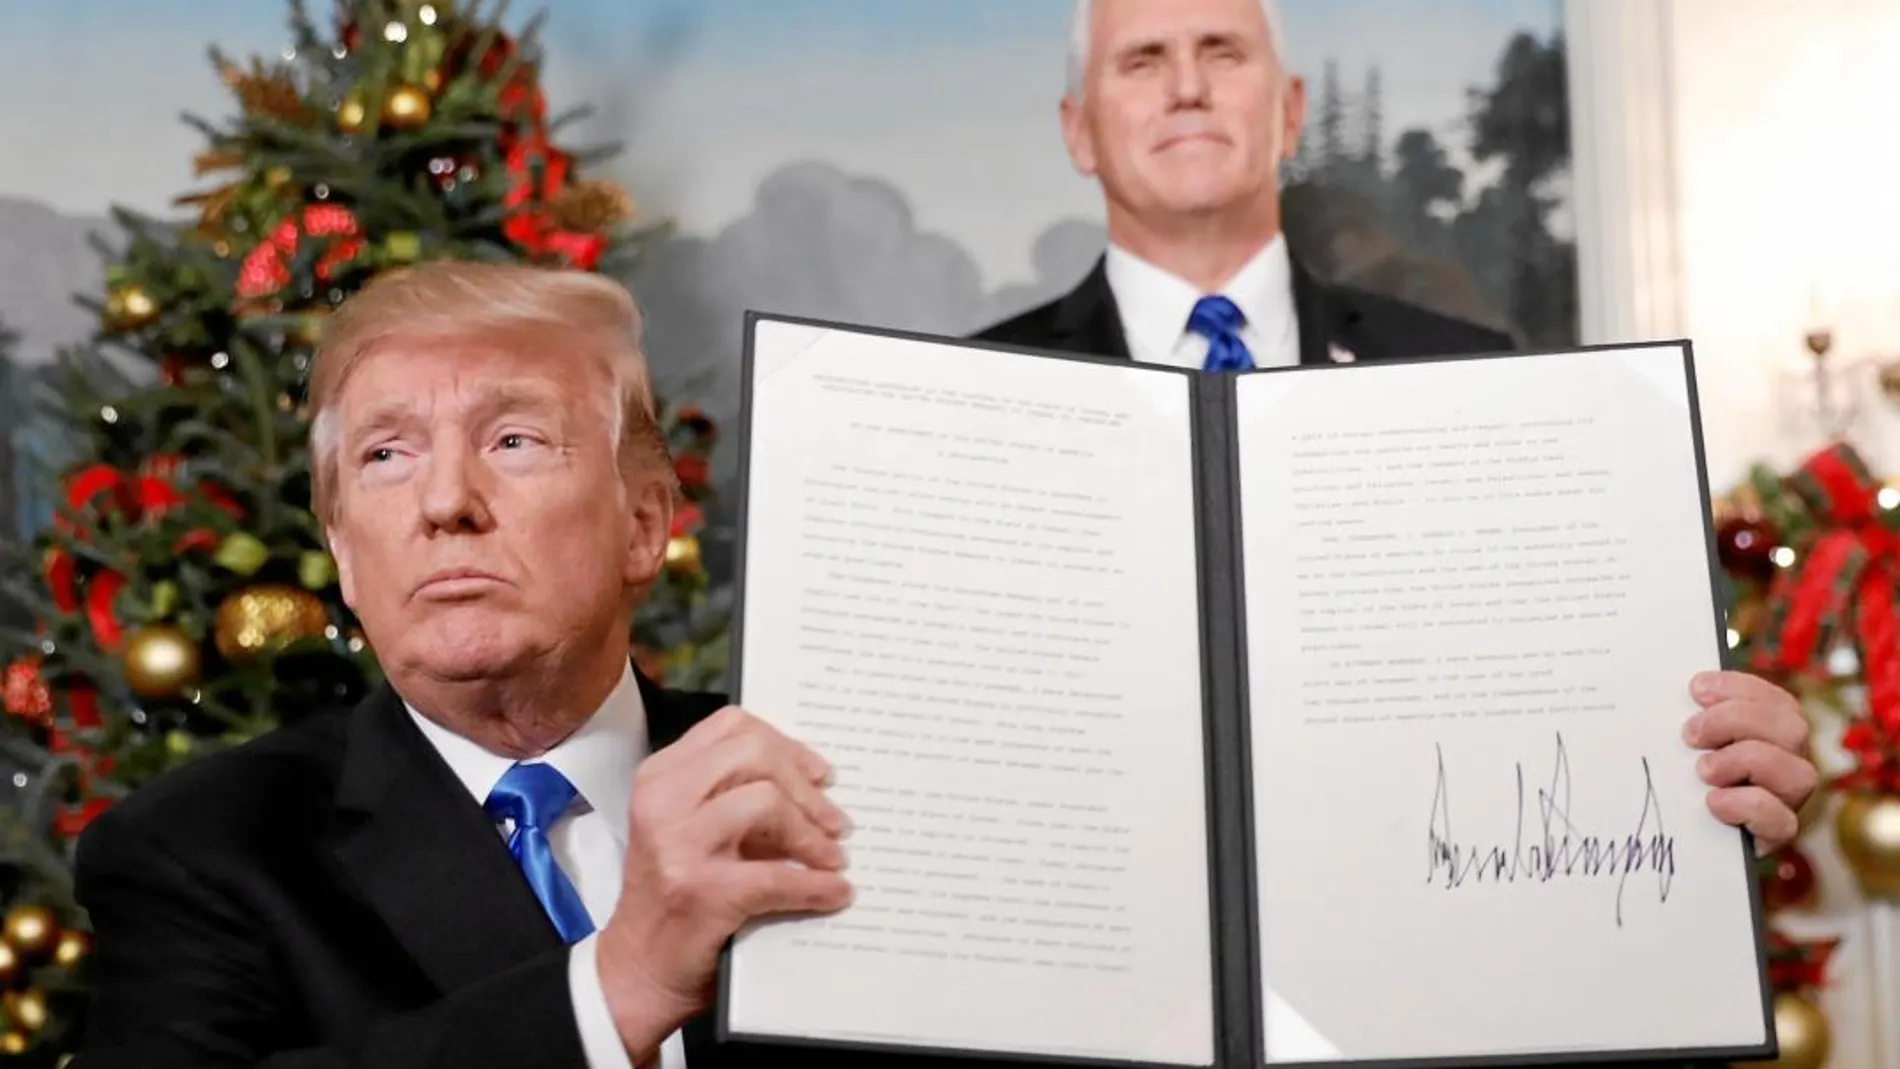 Trump muestra su firma en el documento en el que se decide el traslado de la embajada